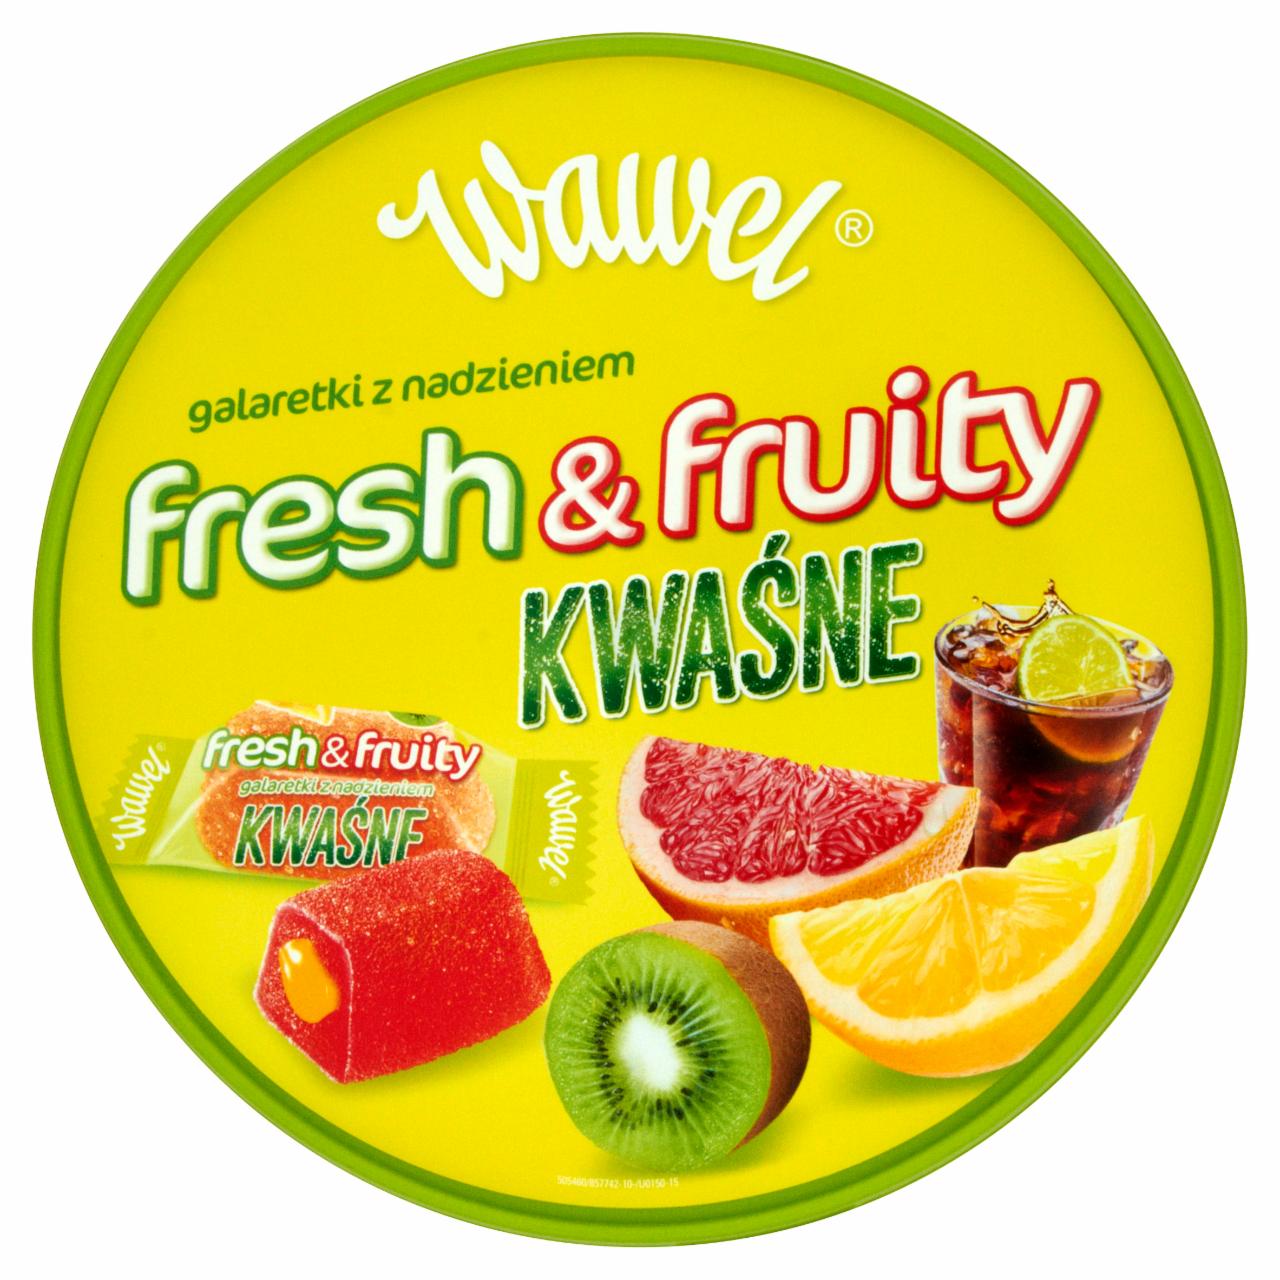 Zdjęcia - Wawel Fresh & Fruity Kwaśne Galaretki z nadzieniem 800 g